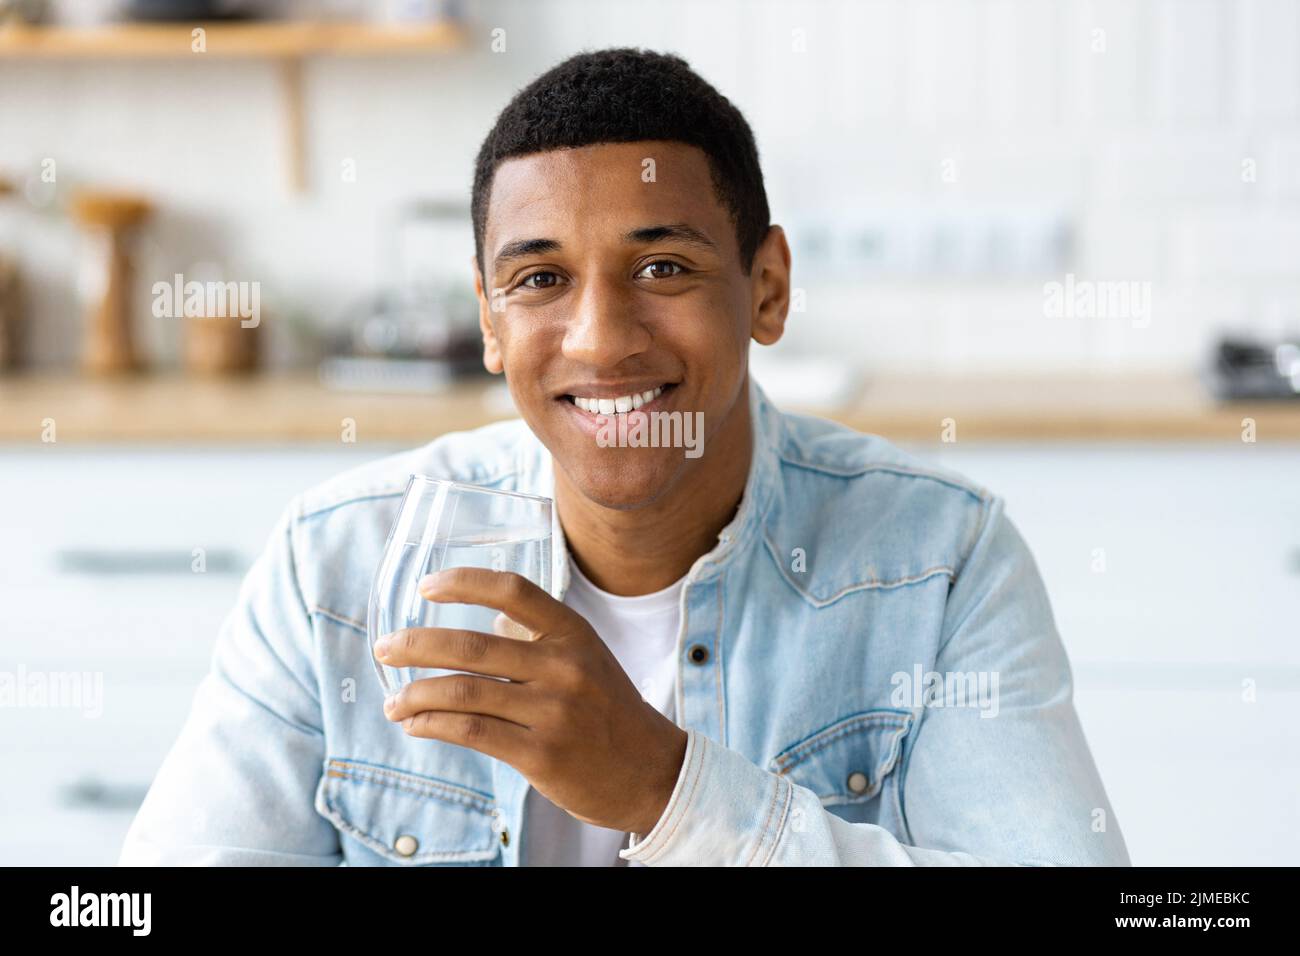 Stile di vita sano giovane uomo che tiene un bicchiere di acqua pulita fresca Foto Stock